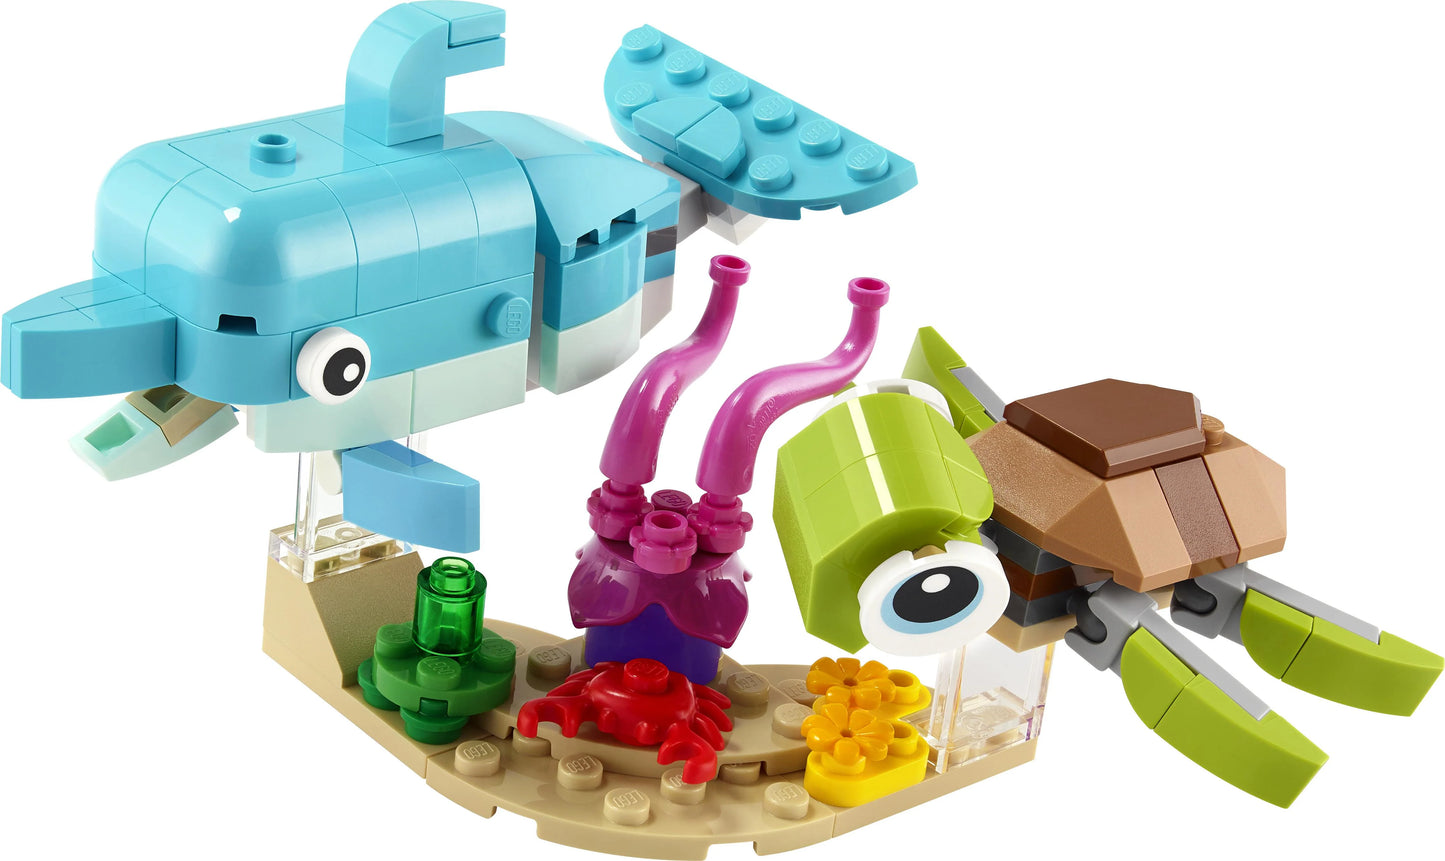 Dolfijn en schildpad-LEGO Creator